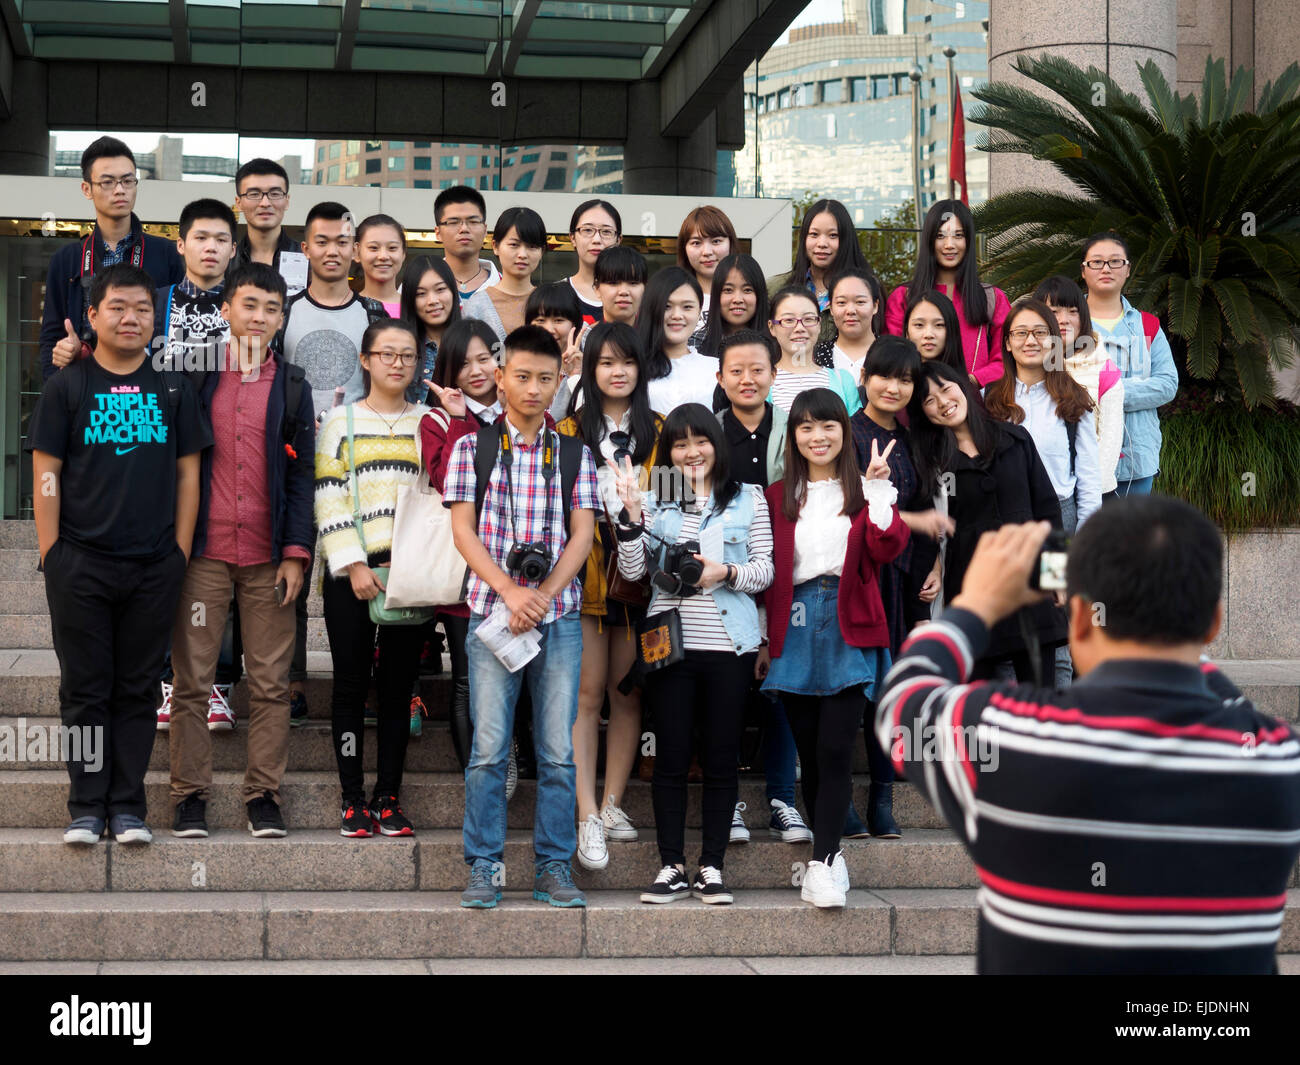 Les adolescents asiatiques posant pour une photo de groupe Banque D'Images